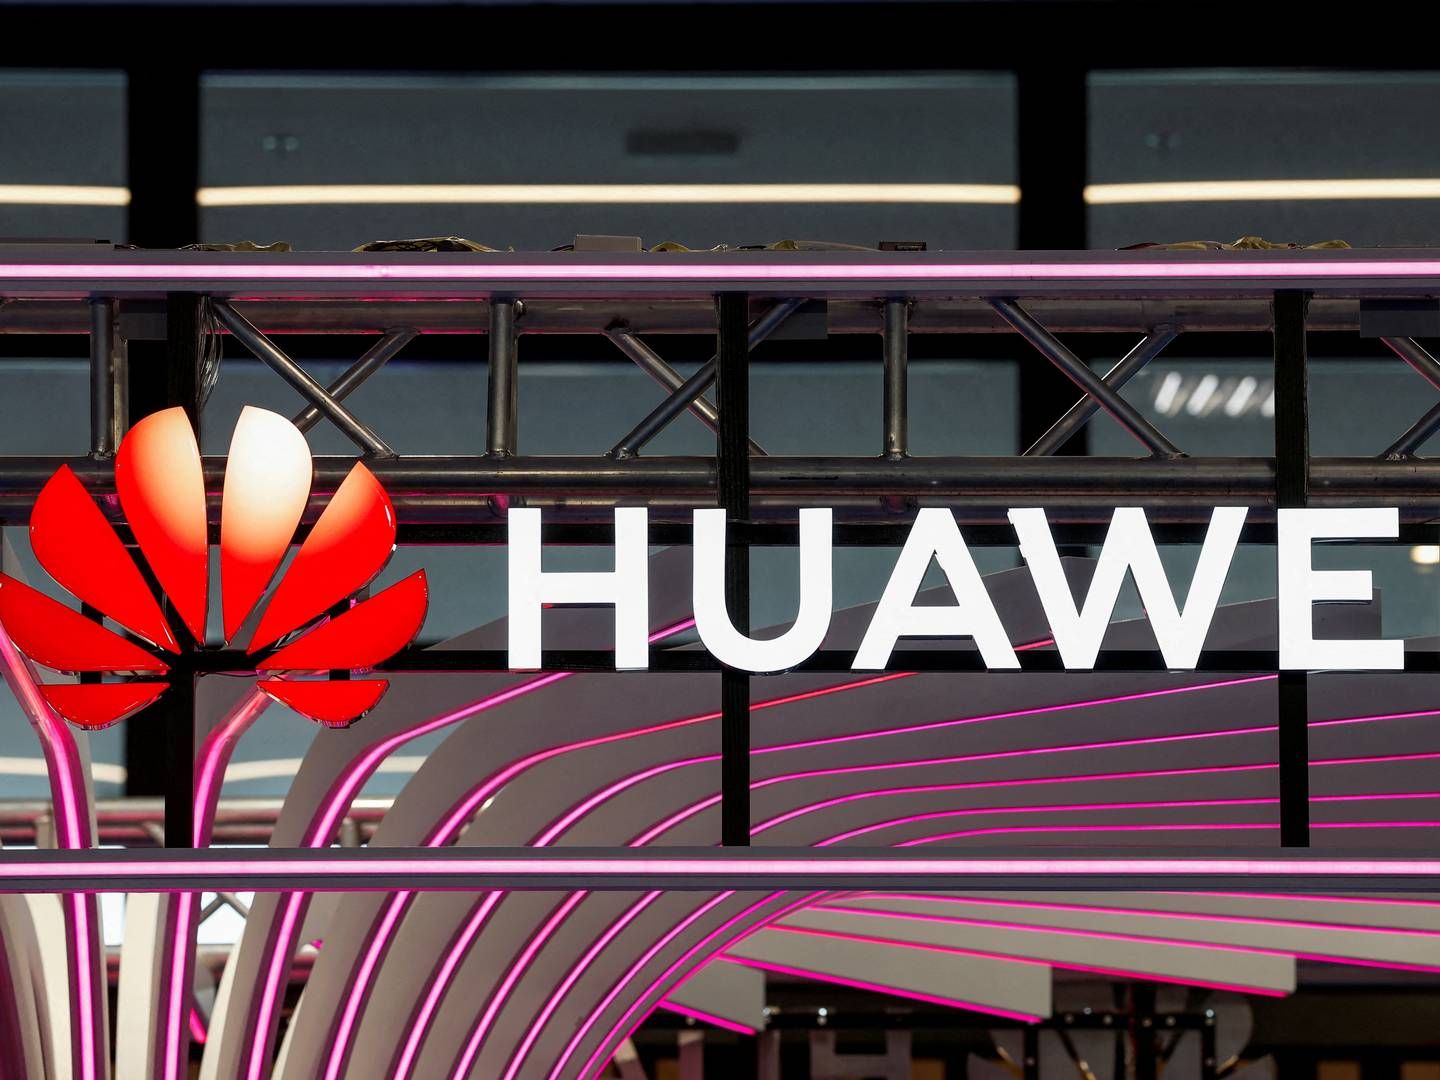 Huawei er blandt de største telefonselskaber på verdensplan, men har været udfordret i dele af vesten, særligt i USA, | Foto: Benoit Tessier